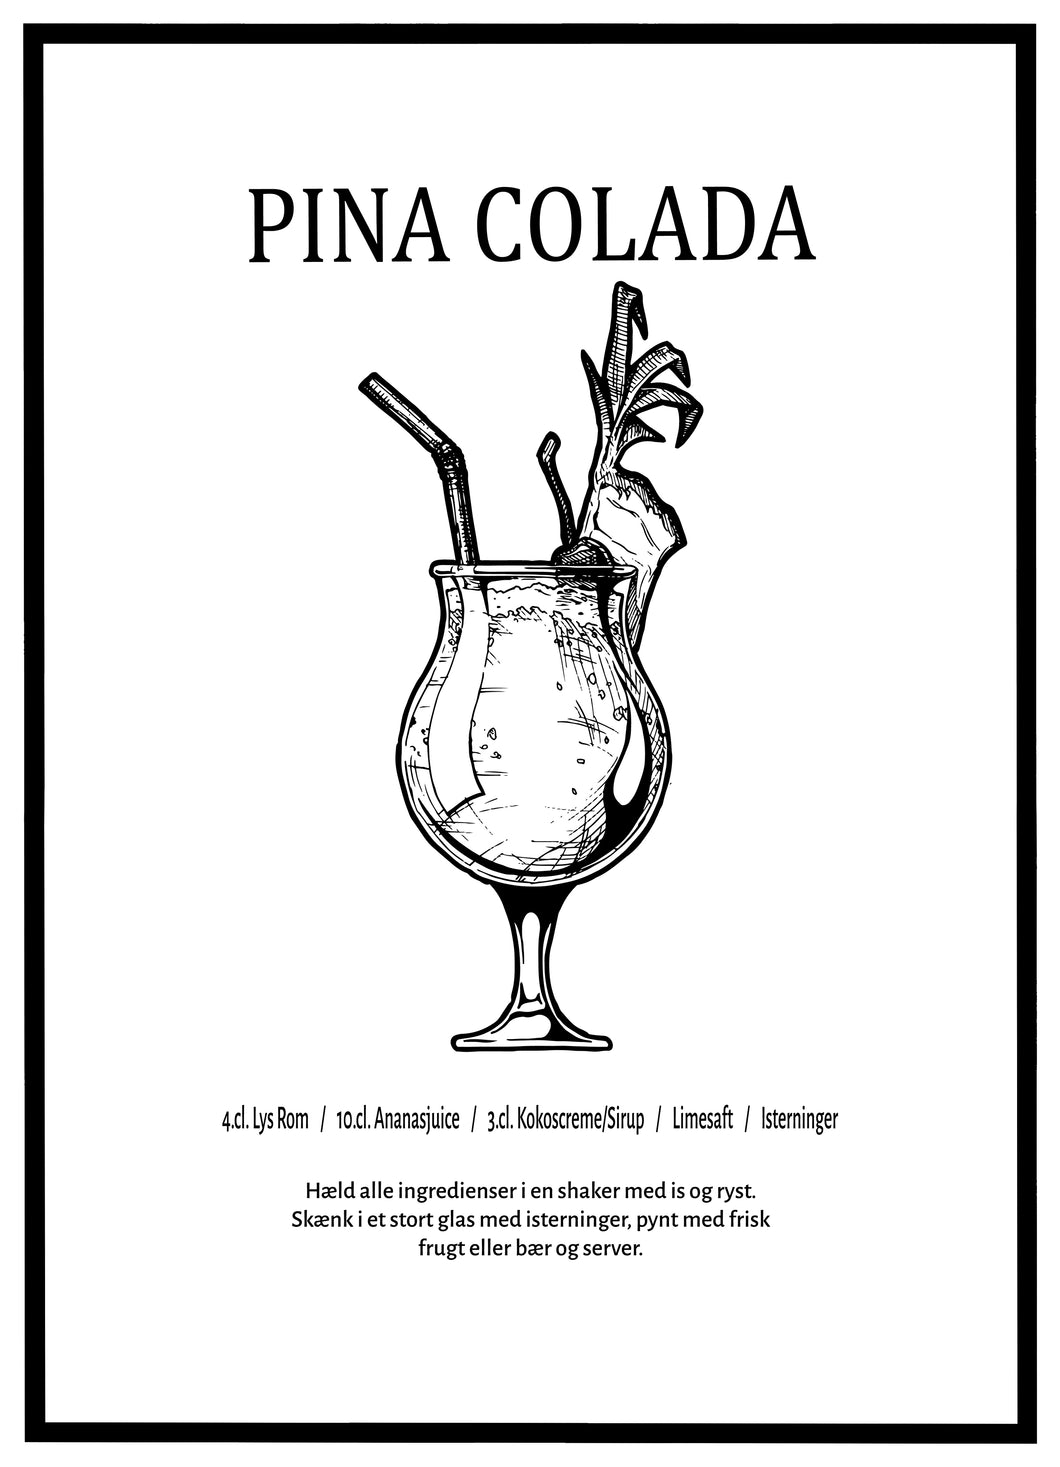 Pina Colada - Plakat